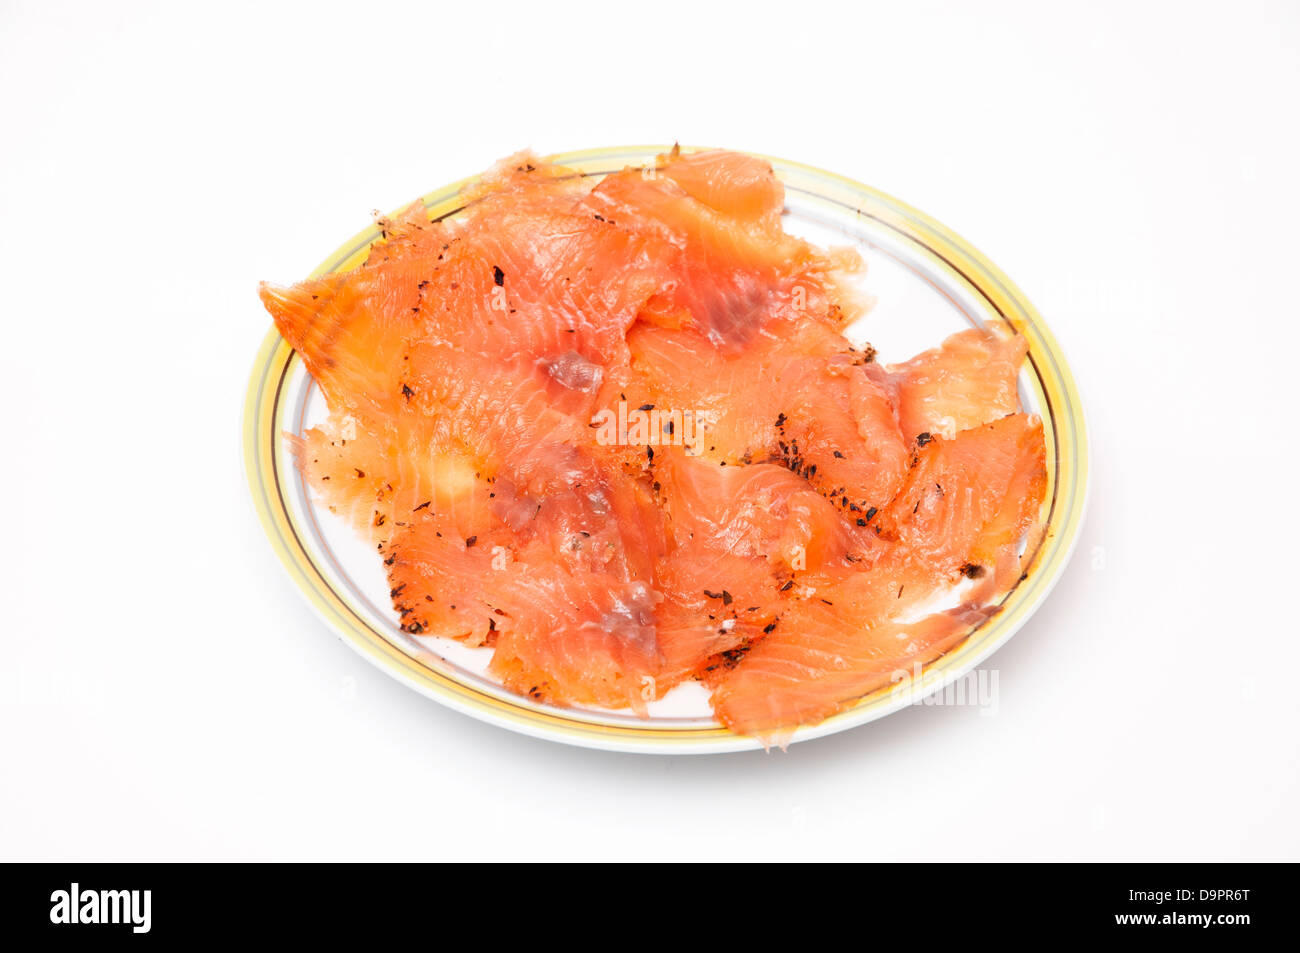 salmon dish on a white background Stock Photo